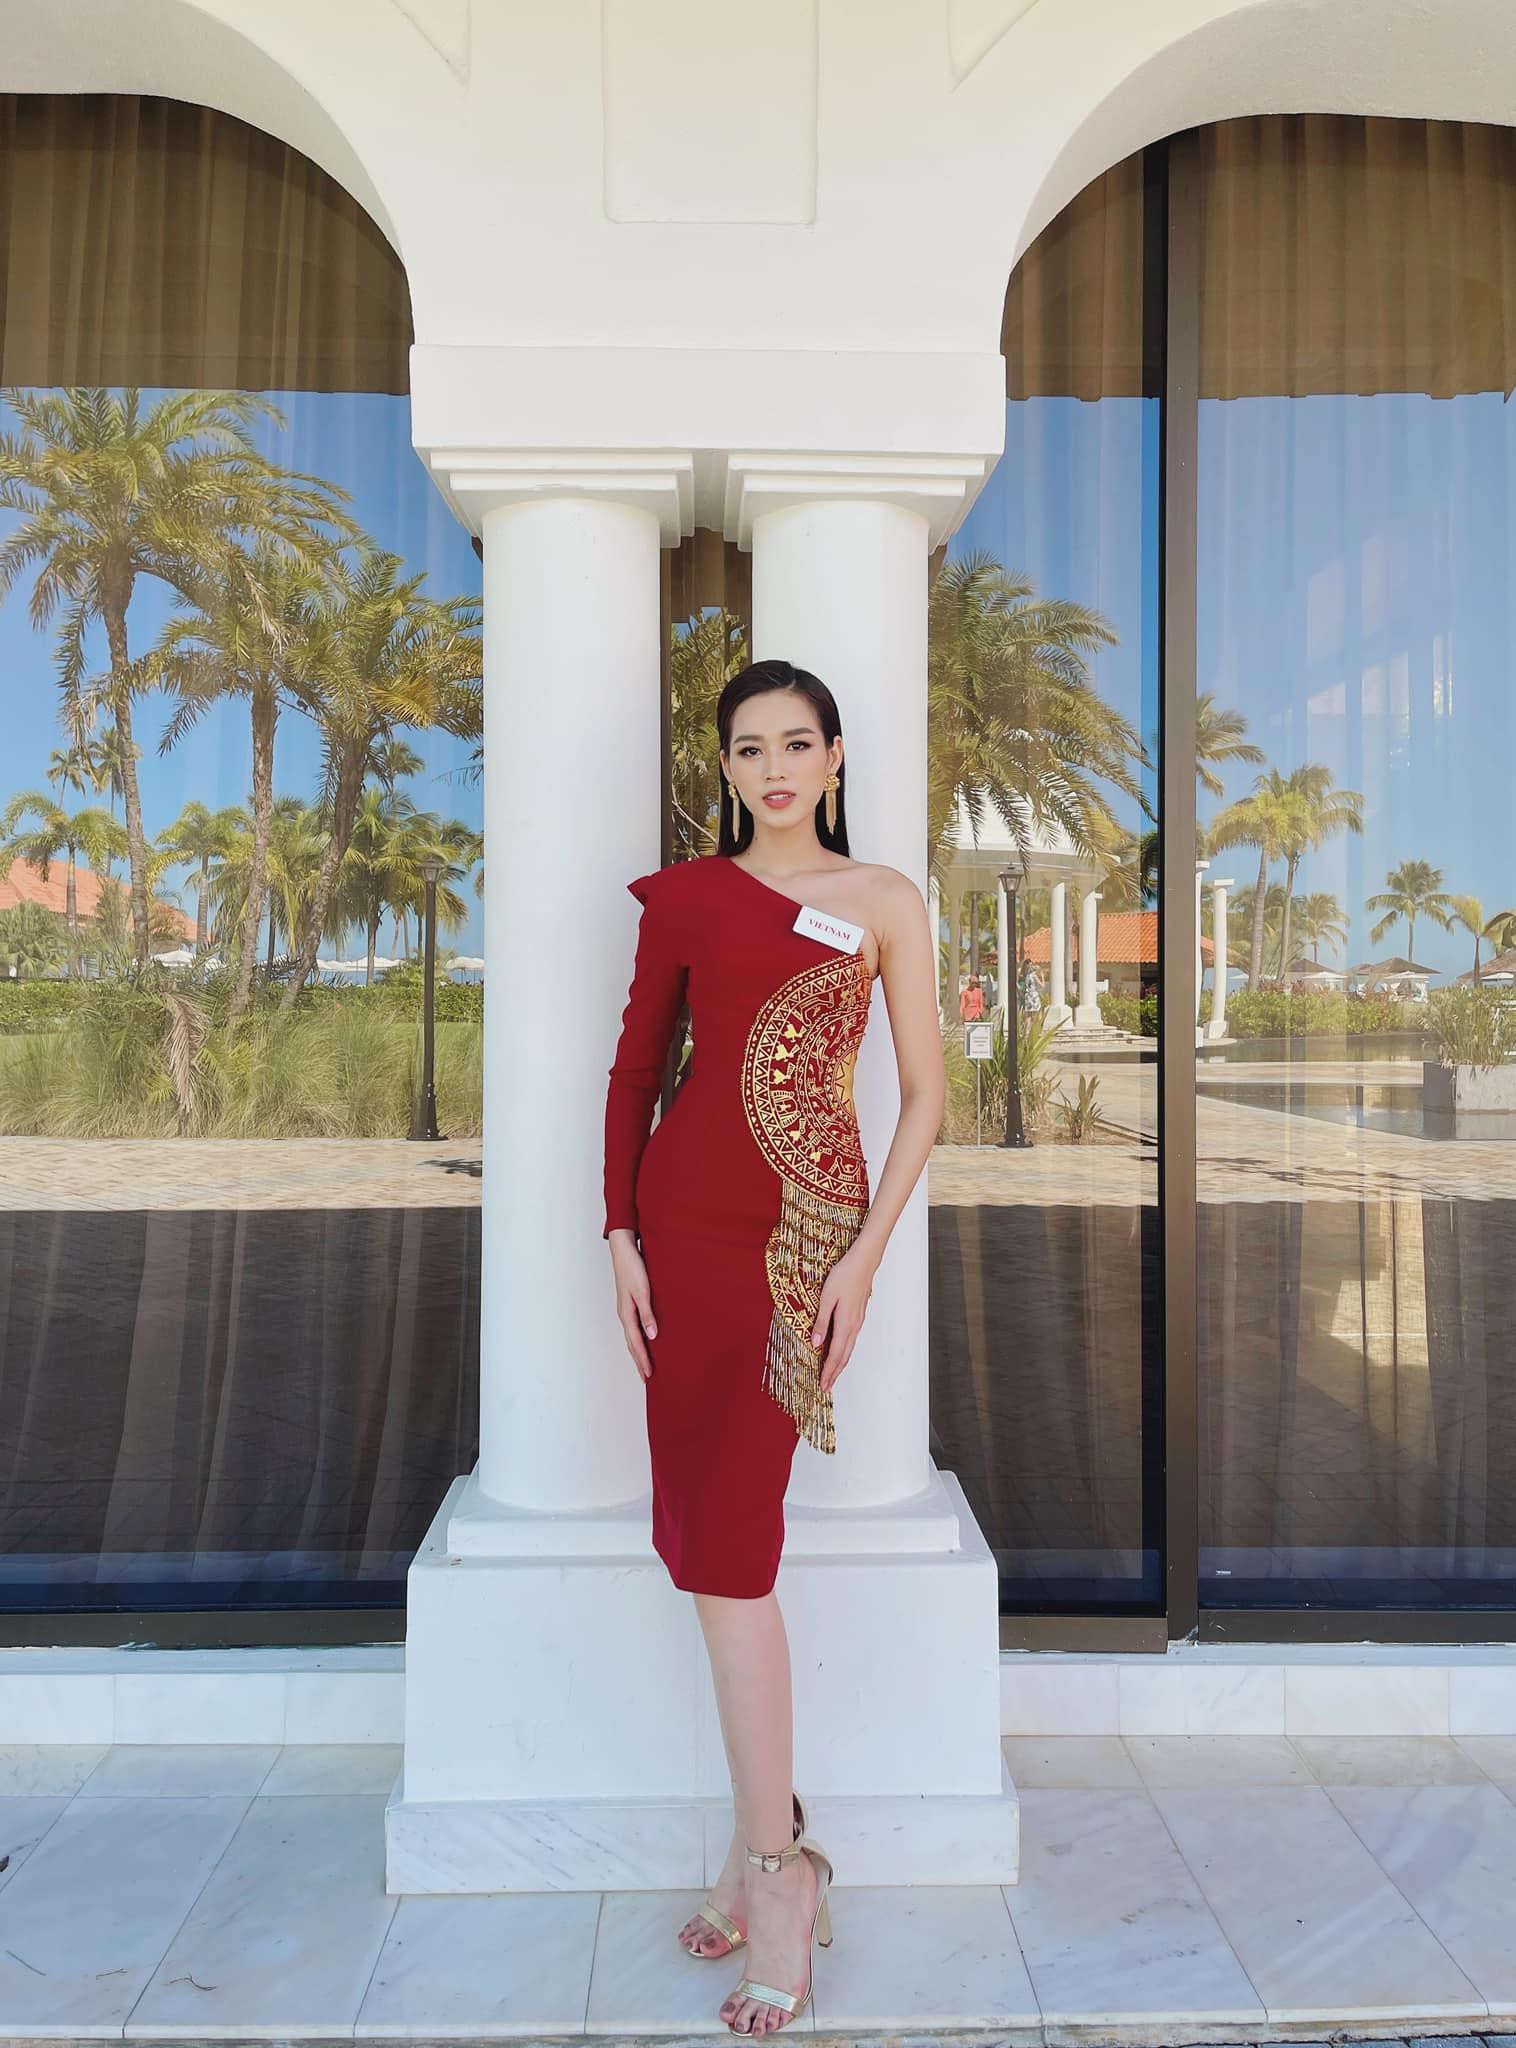 Ngày hôm qua, Hoa hậu Đỗ Thị Hà đã hoàn thành vòng thi đầu tiên tại phần thi Head to Head Challenge ở cuộc thi Miss World 2021 tổ chức tại Puerto Rico.